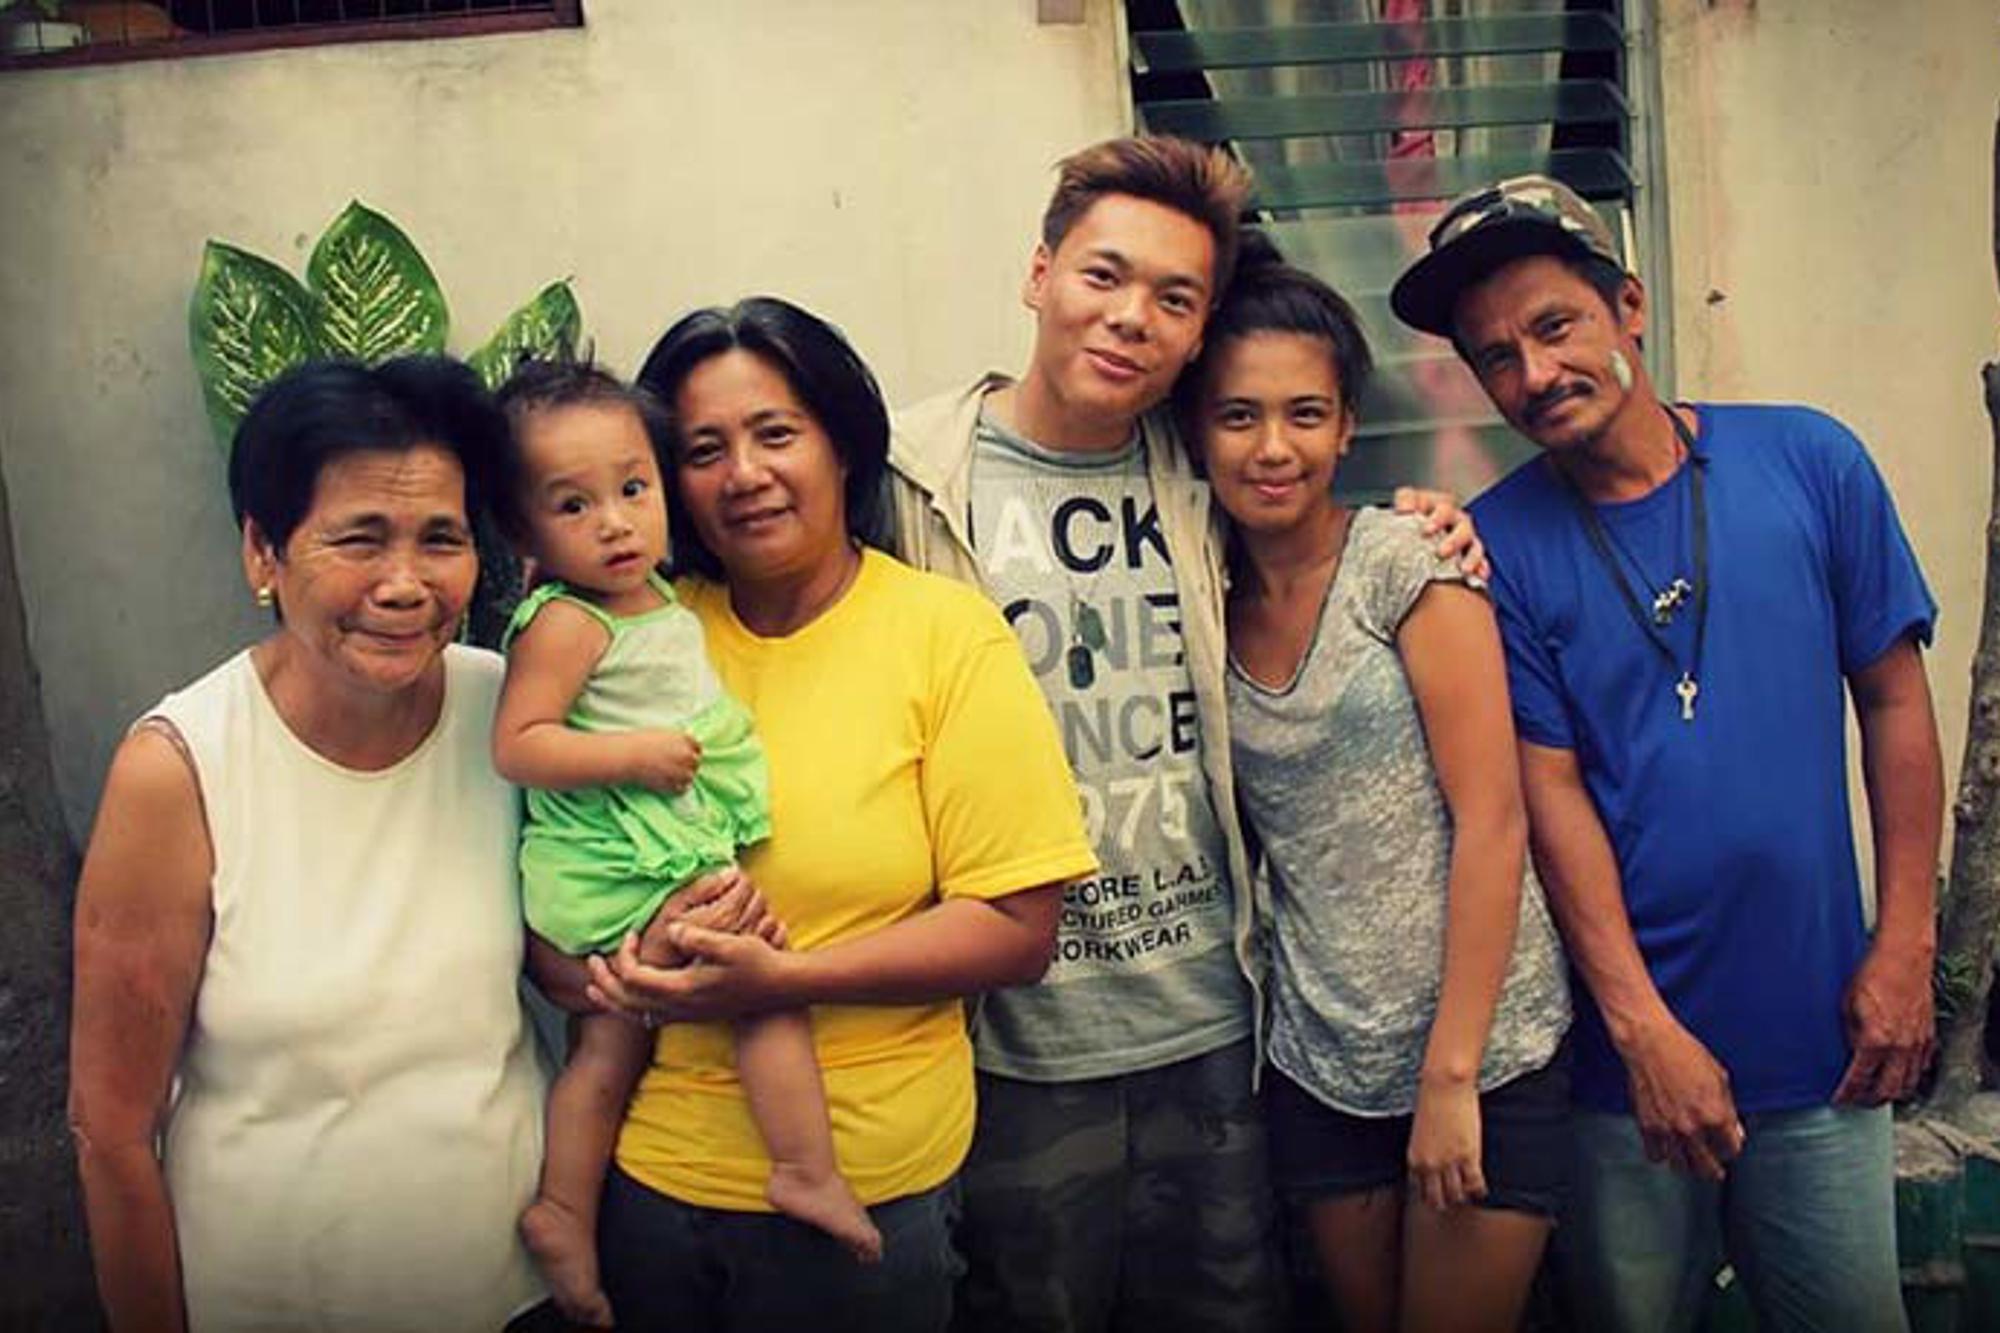 John tillsammans med sin biologiska familj i Filippinerna. Från vänster: Hans mormor, systerdotter, mamma, John själv, hans syster och pappa.